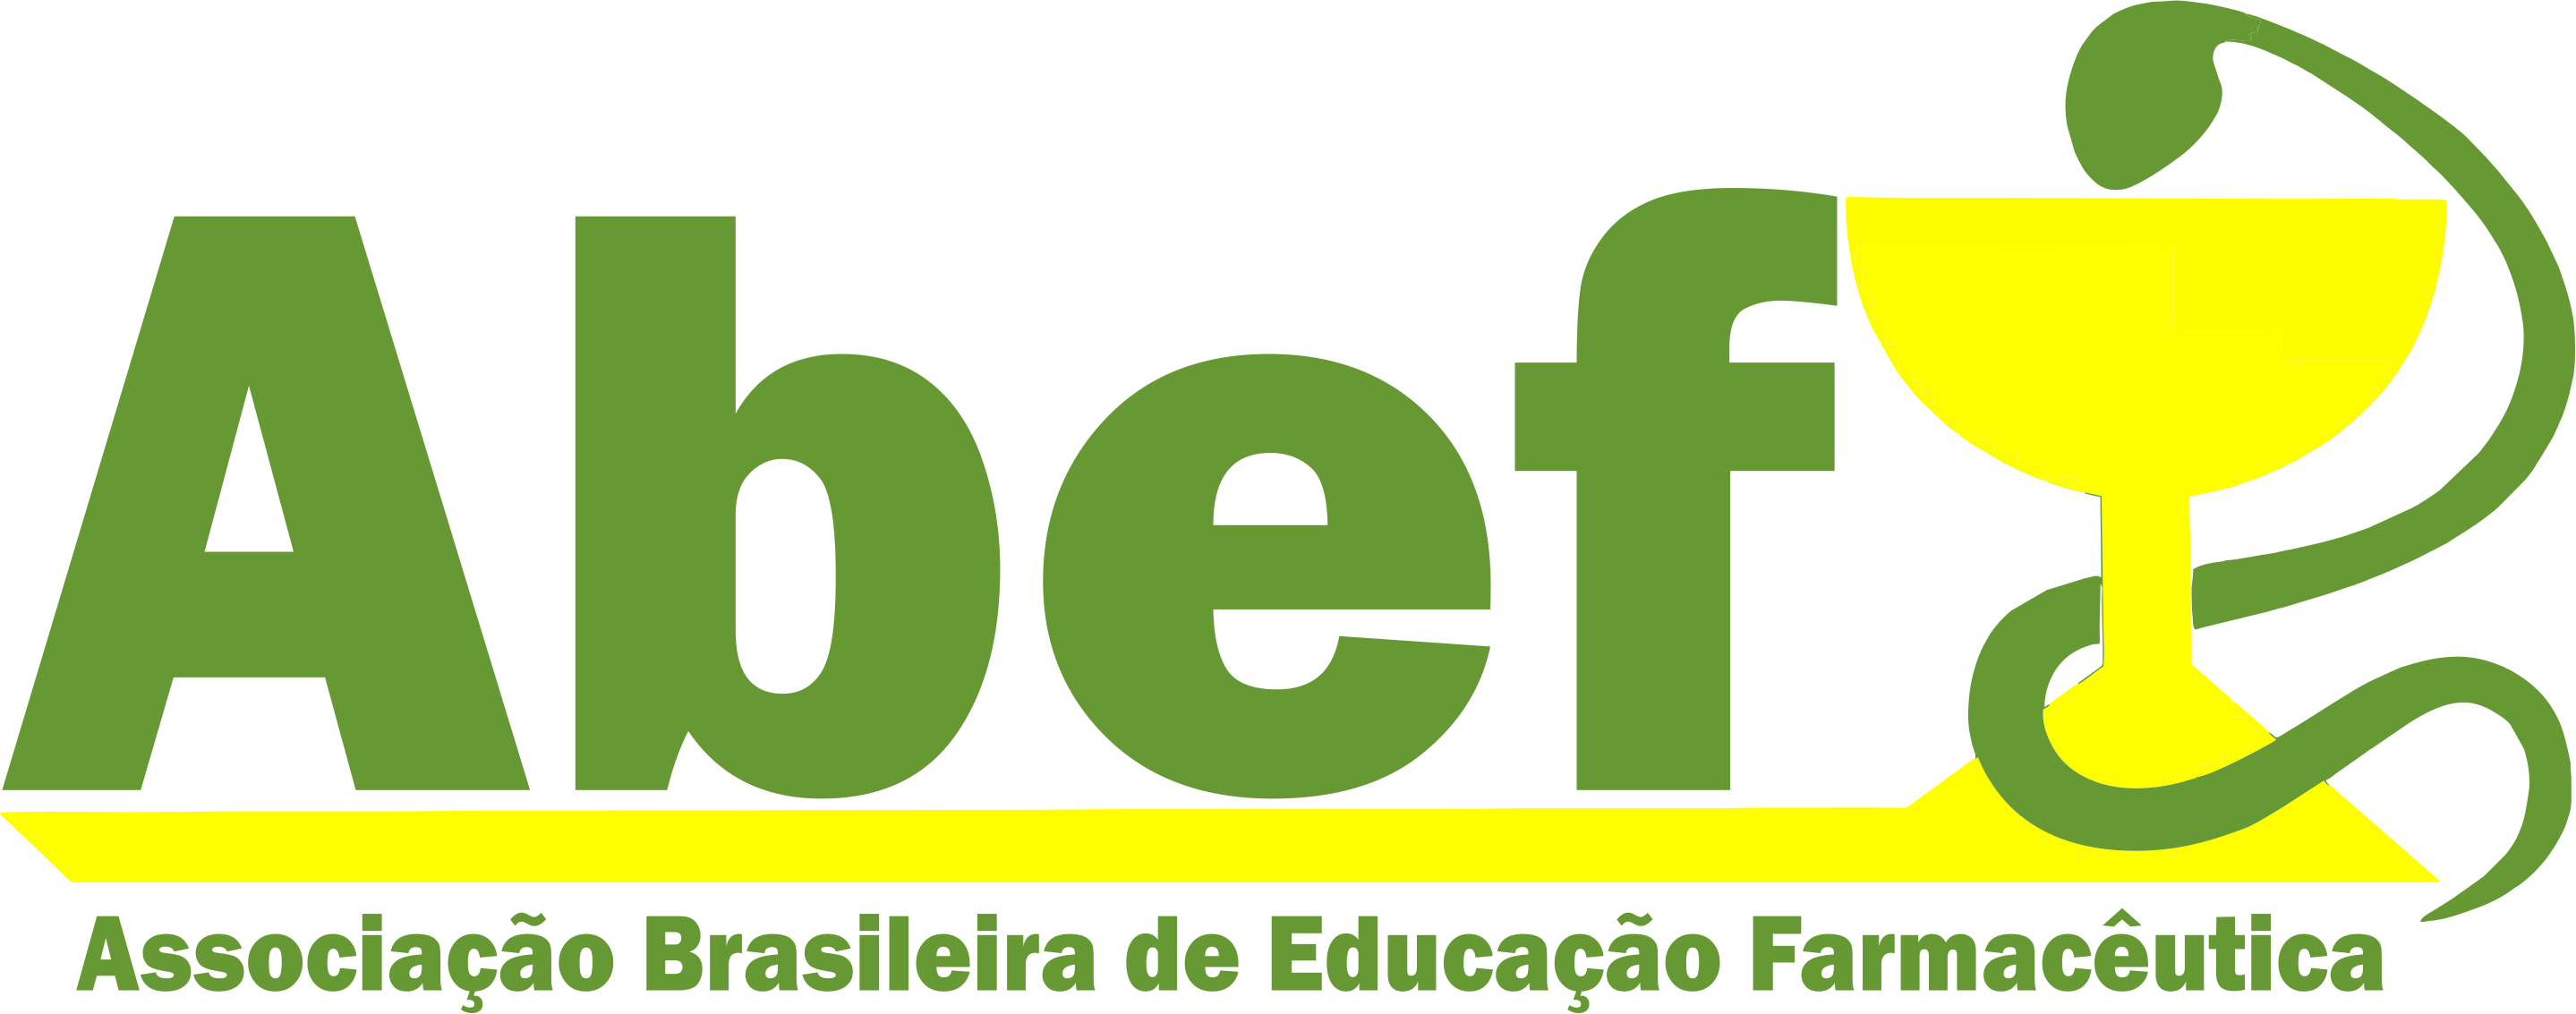 ABEF – Associação Brasileira de Educação Farmacêutica